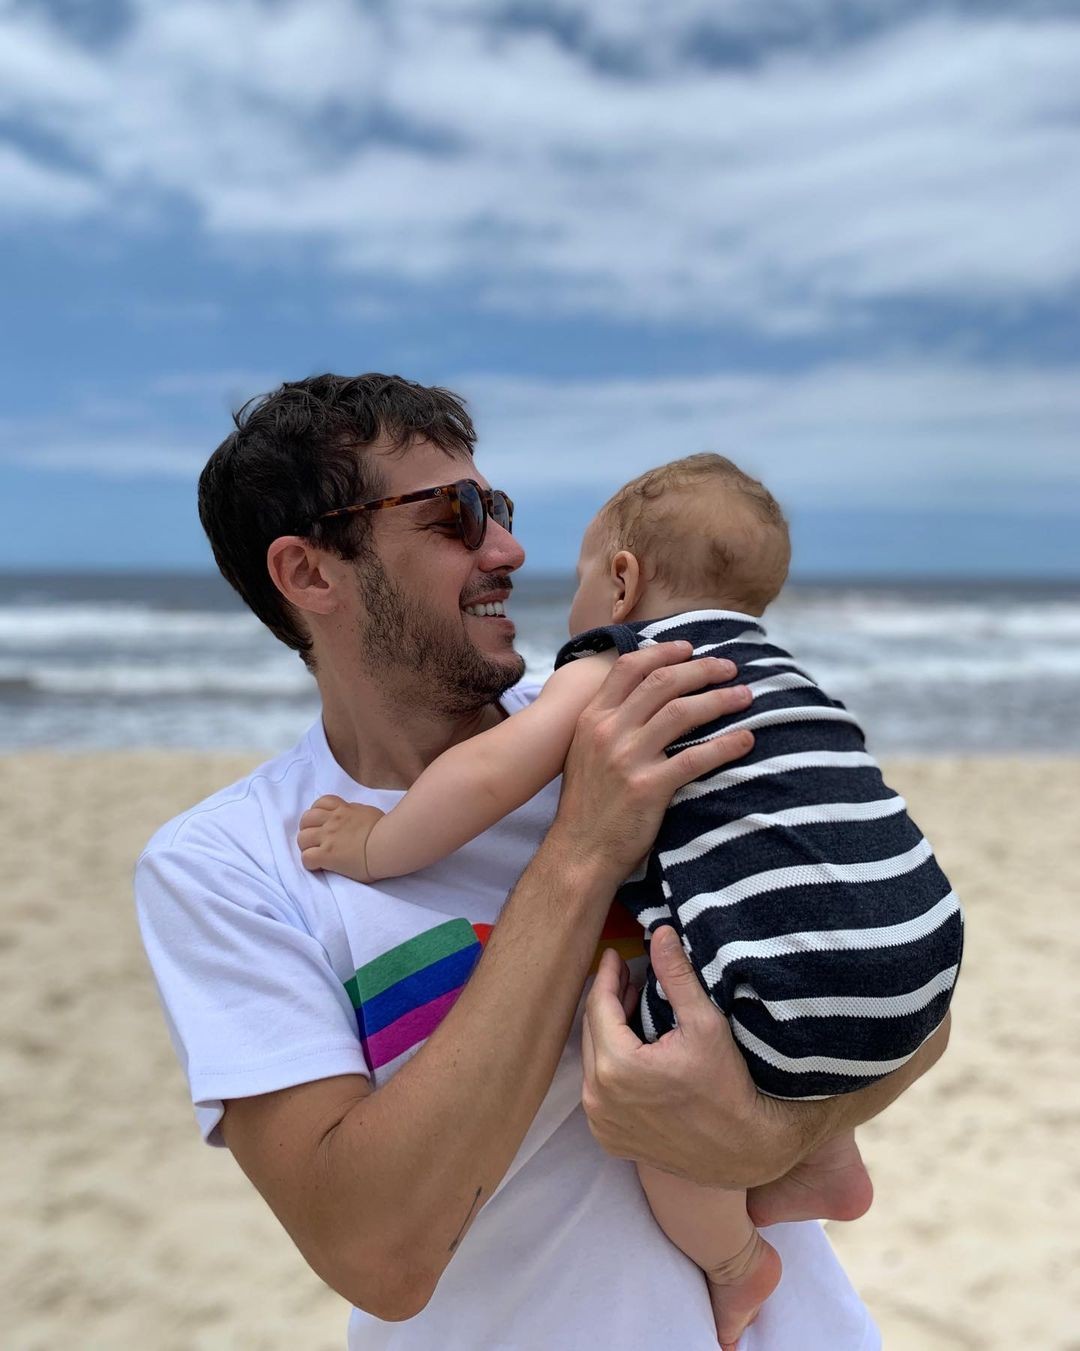 Jayme Matarazzo posa com o filho em praia e fala sobre paternidade  (Foto: Reprodução / Instagram)